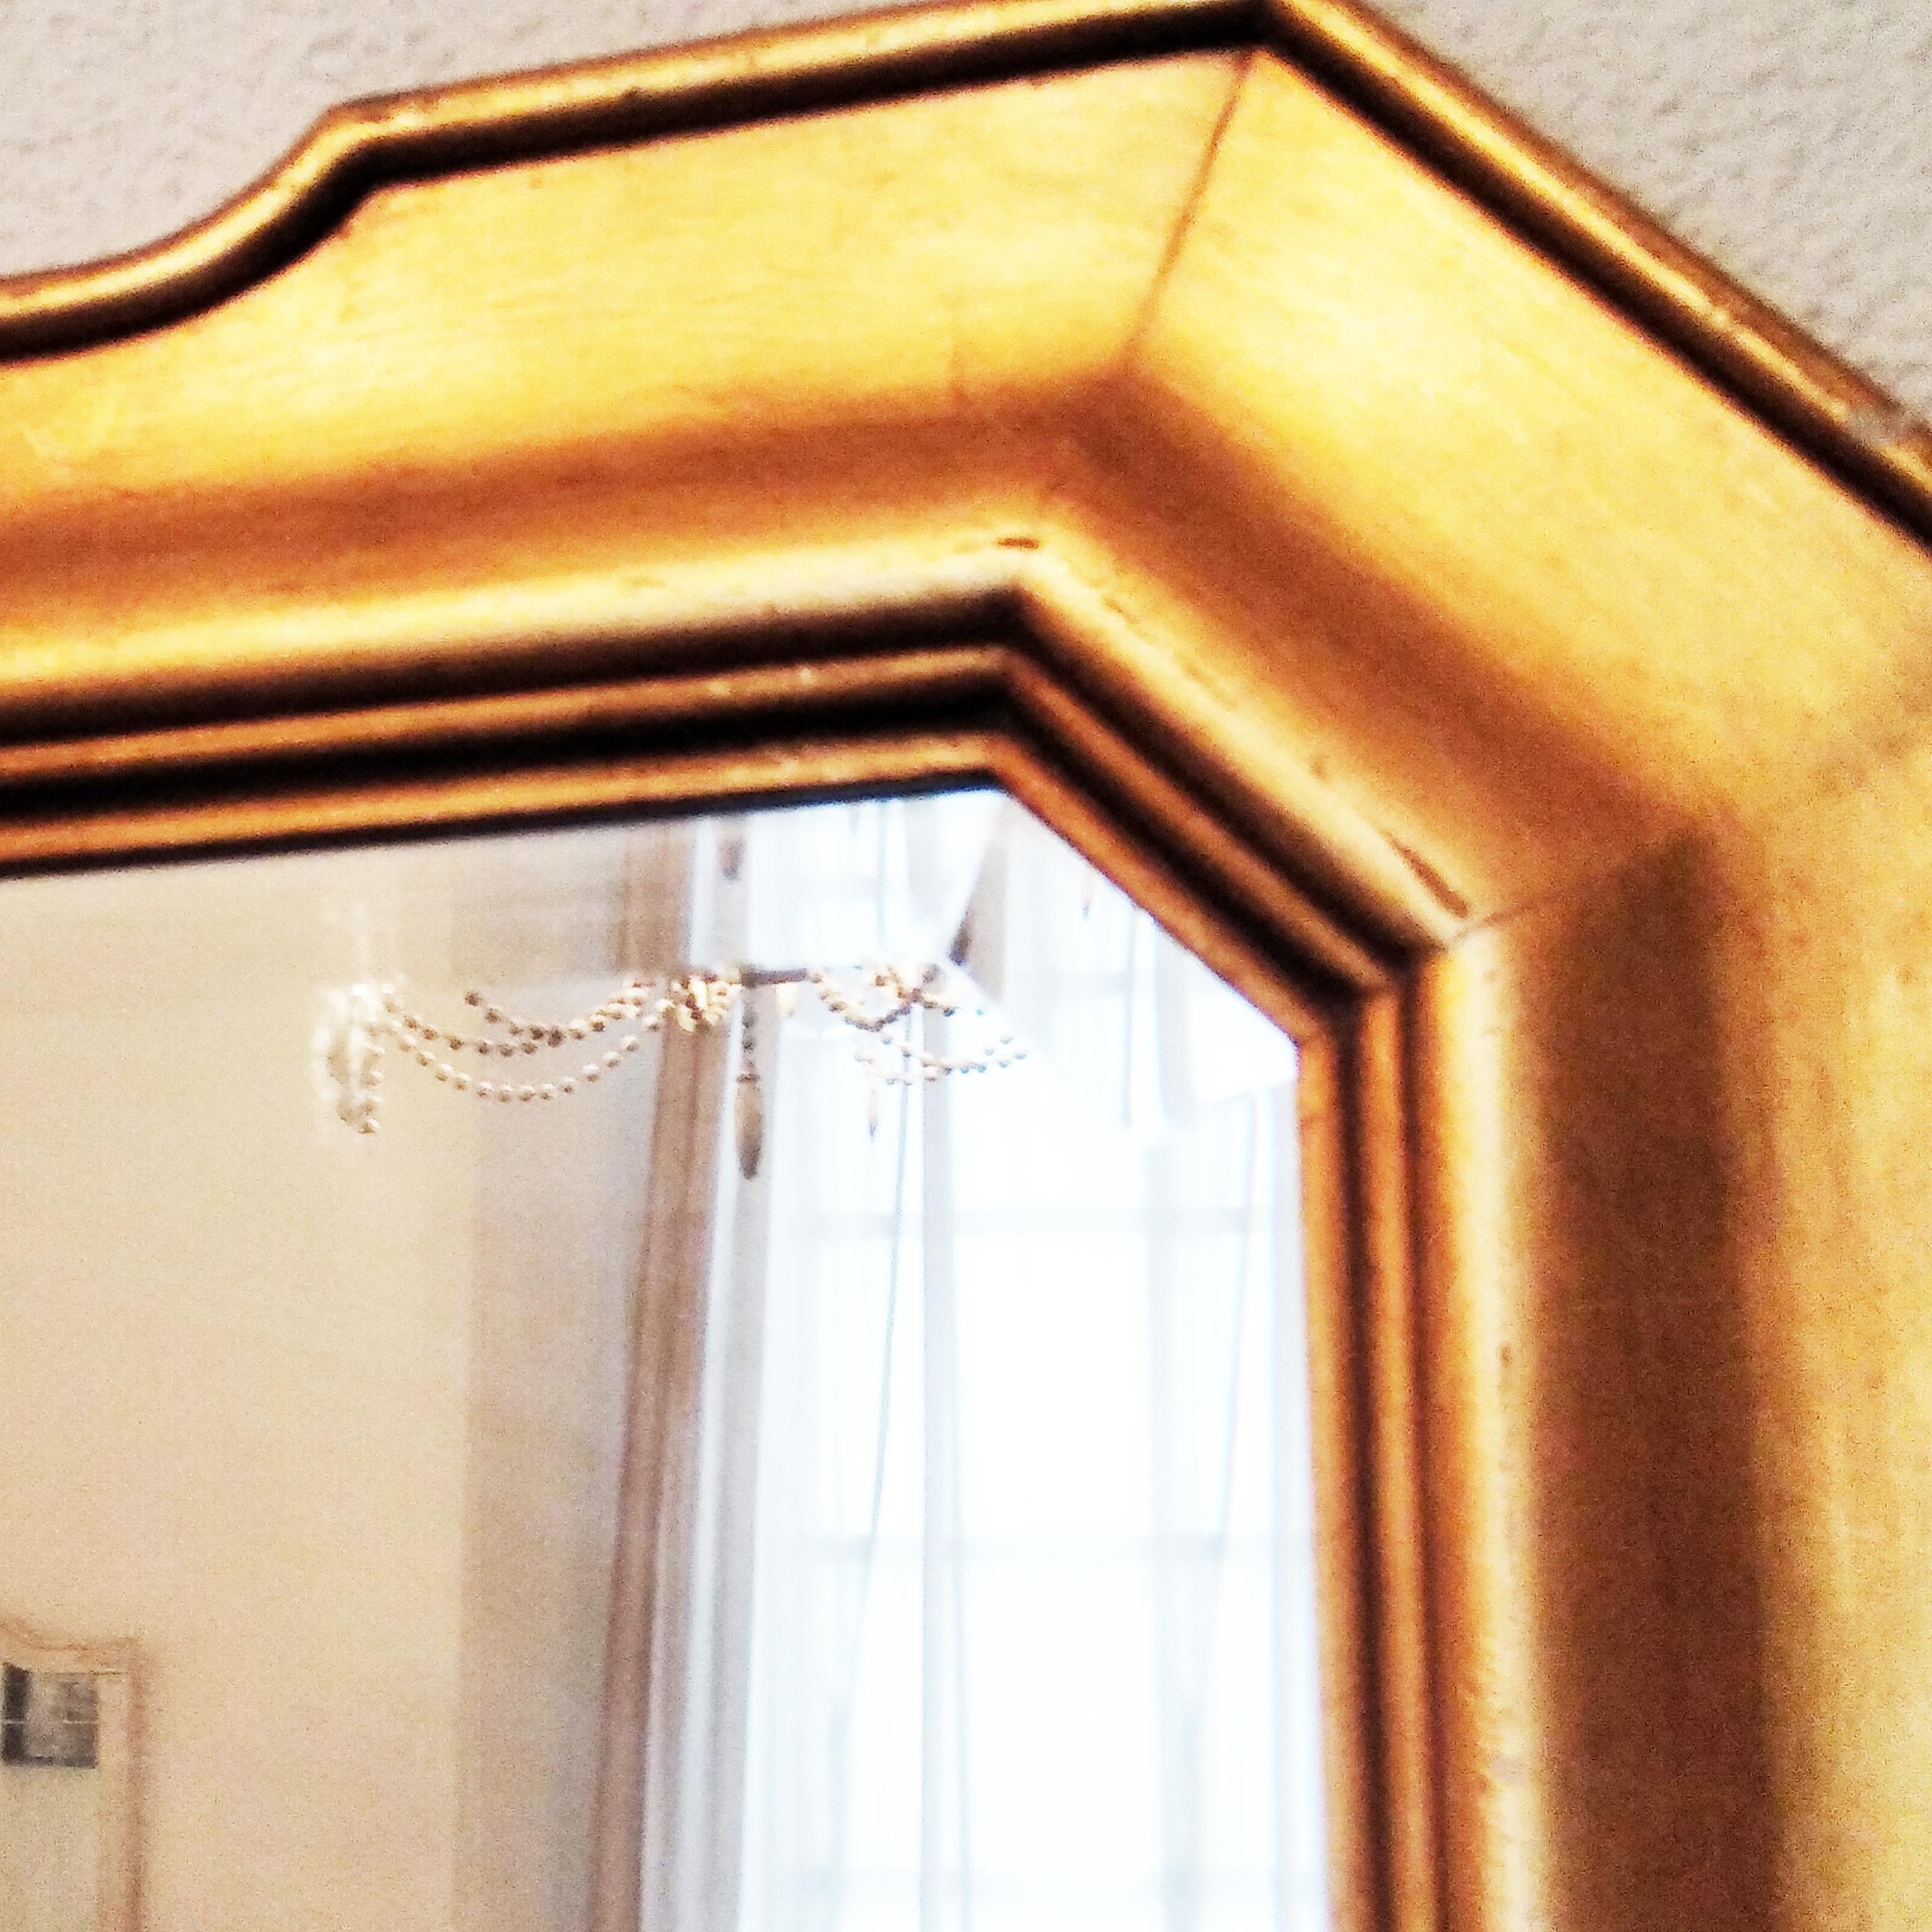 Miroir en bois à feuilles d'or. Verre biseauté. Forme géométrique. Poids 7'3kg. Dimensions 70cm x 90cm.
avec verre biseauté et usé
Position verticale ou horizontale du miroir
Miroir console, miroir d'entrée, miroir de salle de bain, miroir de